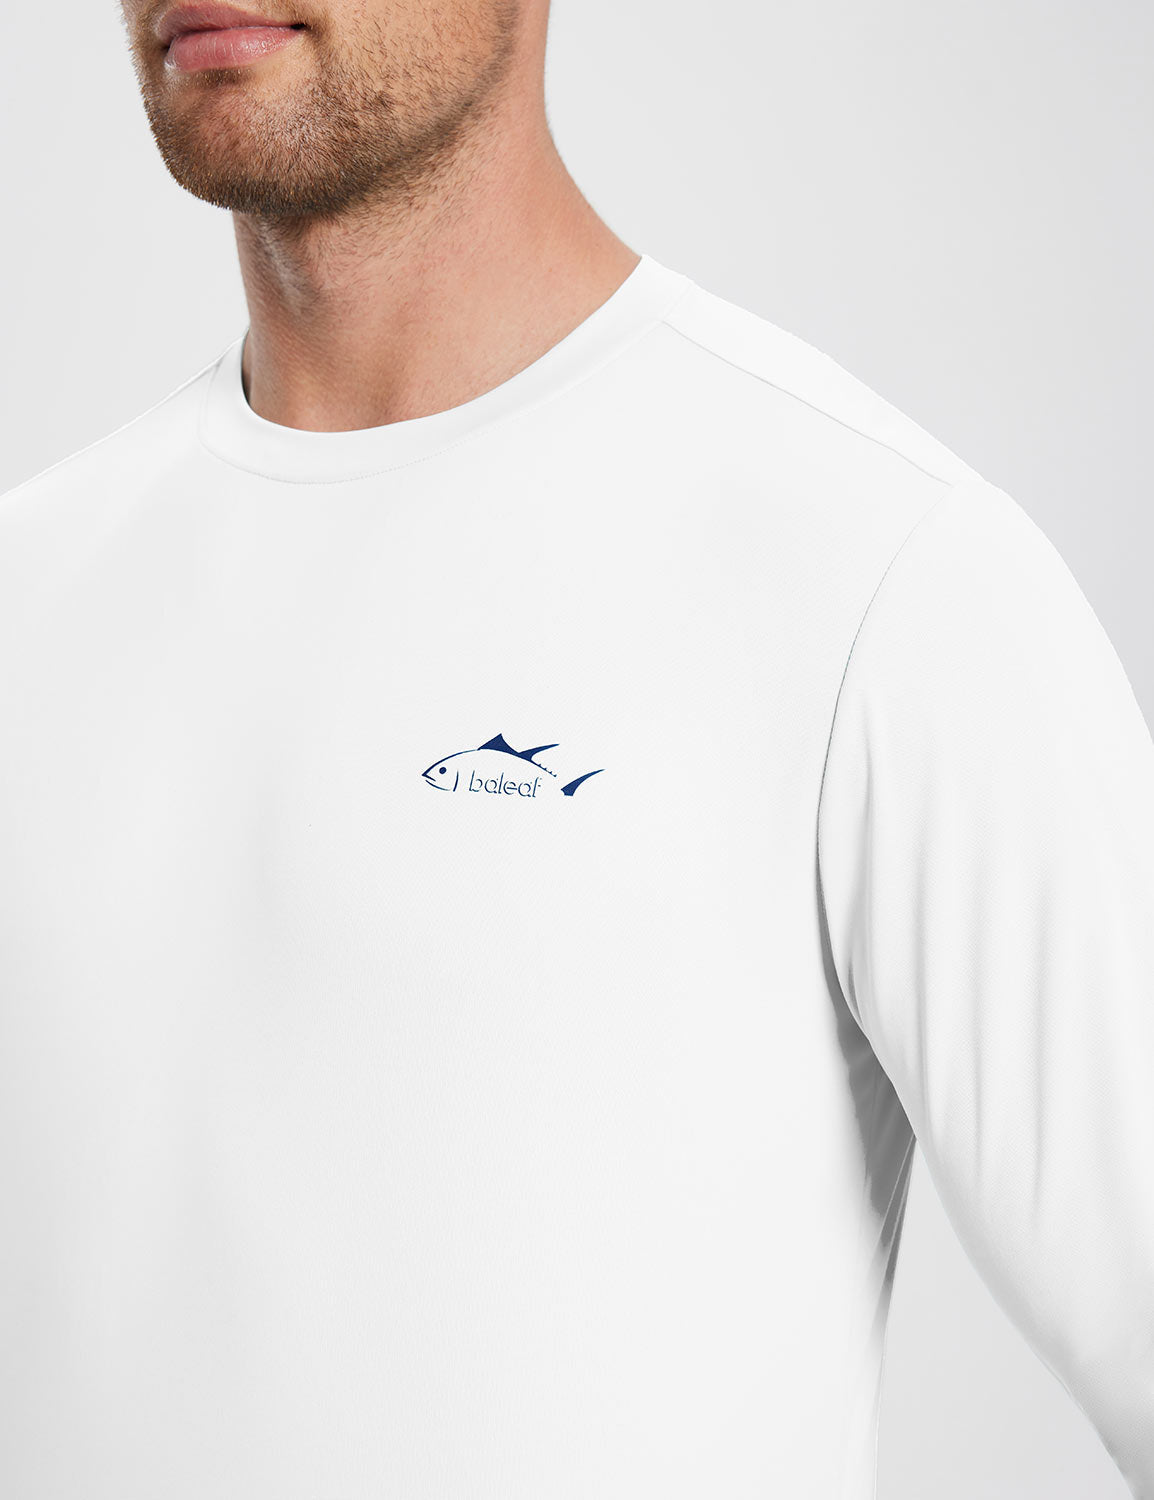 Baleaf Men's UPF 50+ Fishing T-Shirt ega009 Lucent White Details